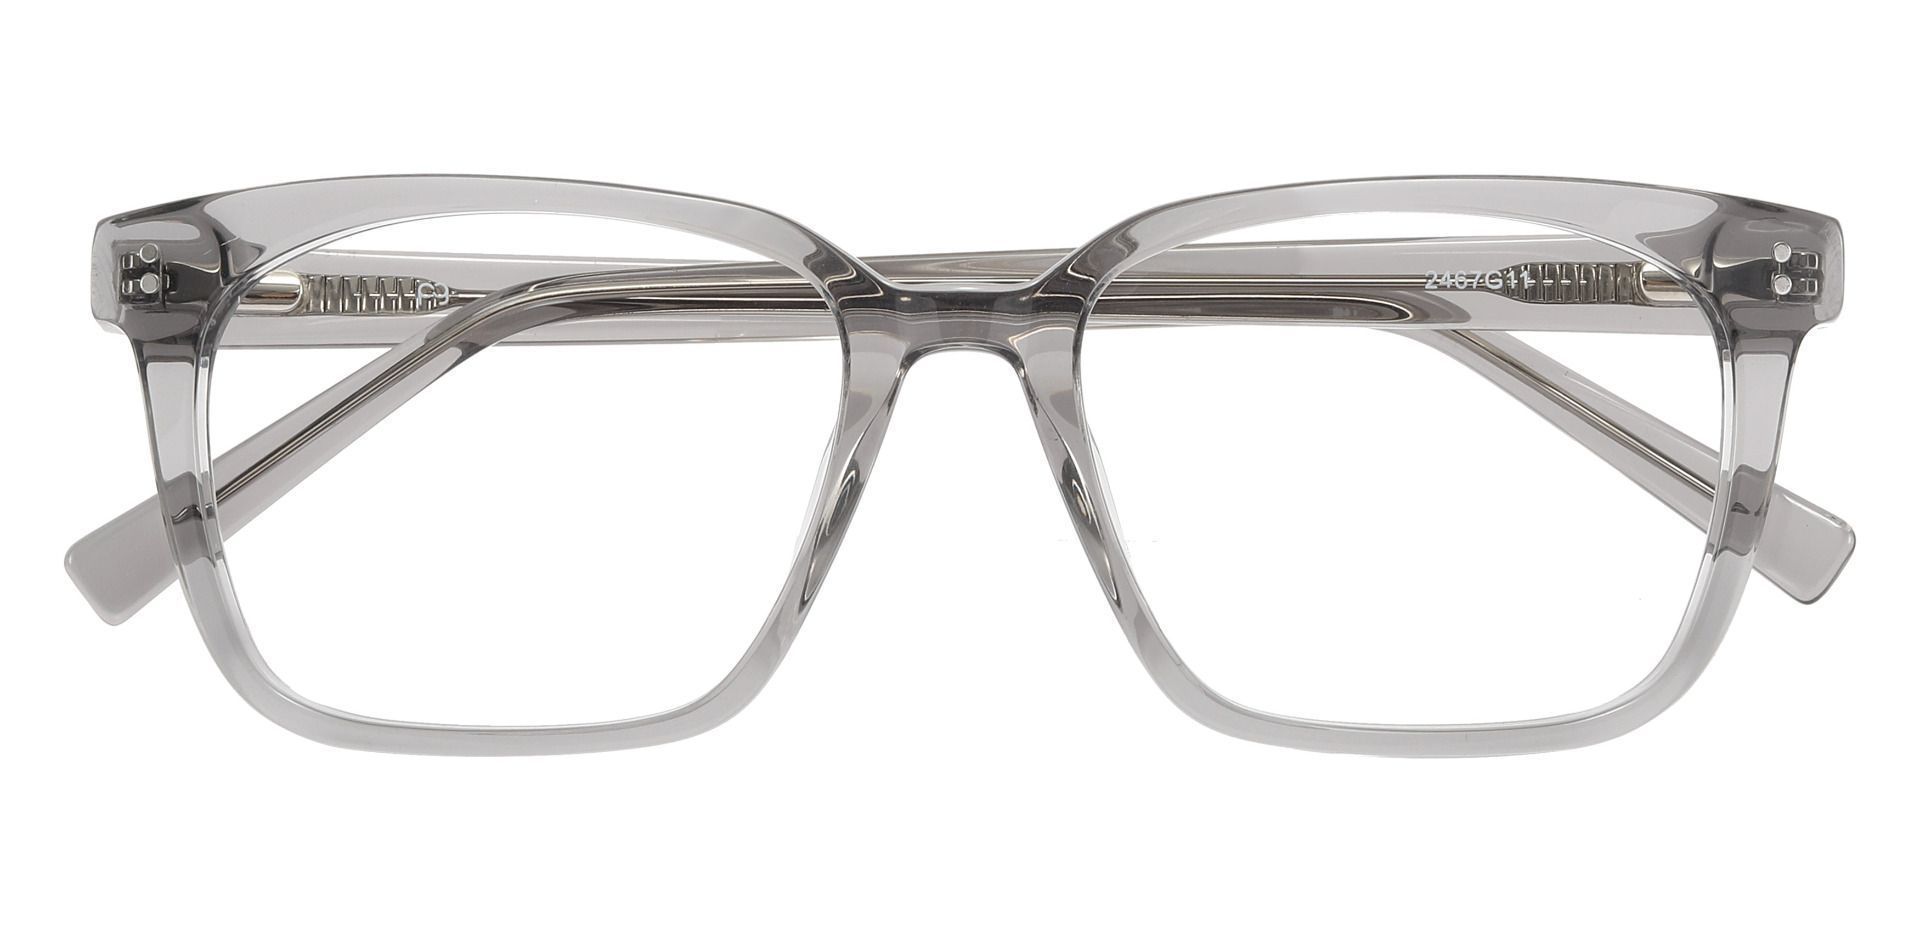 Apex Rectangle Non-Rx Glasses - Gray